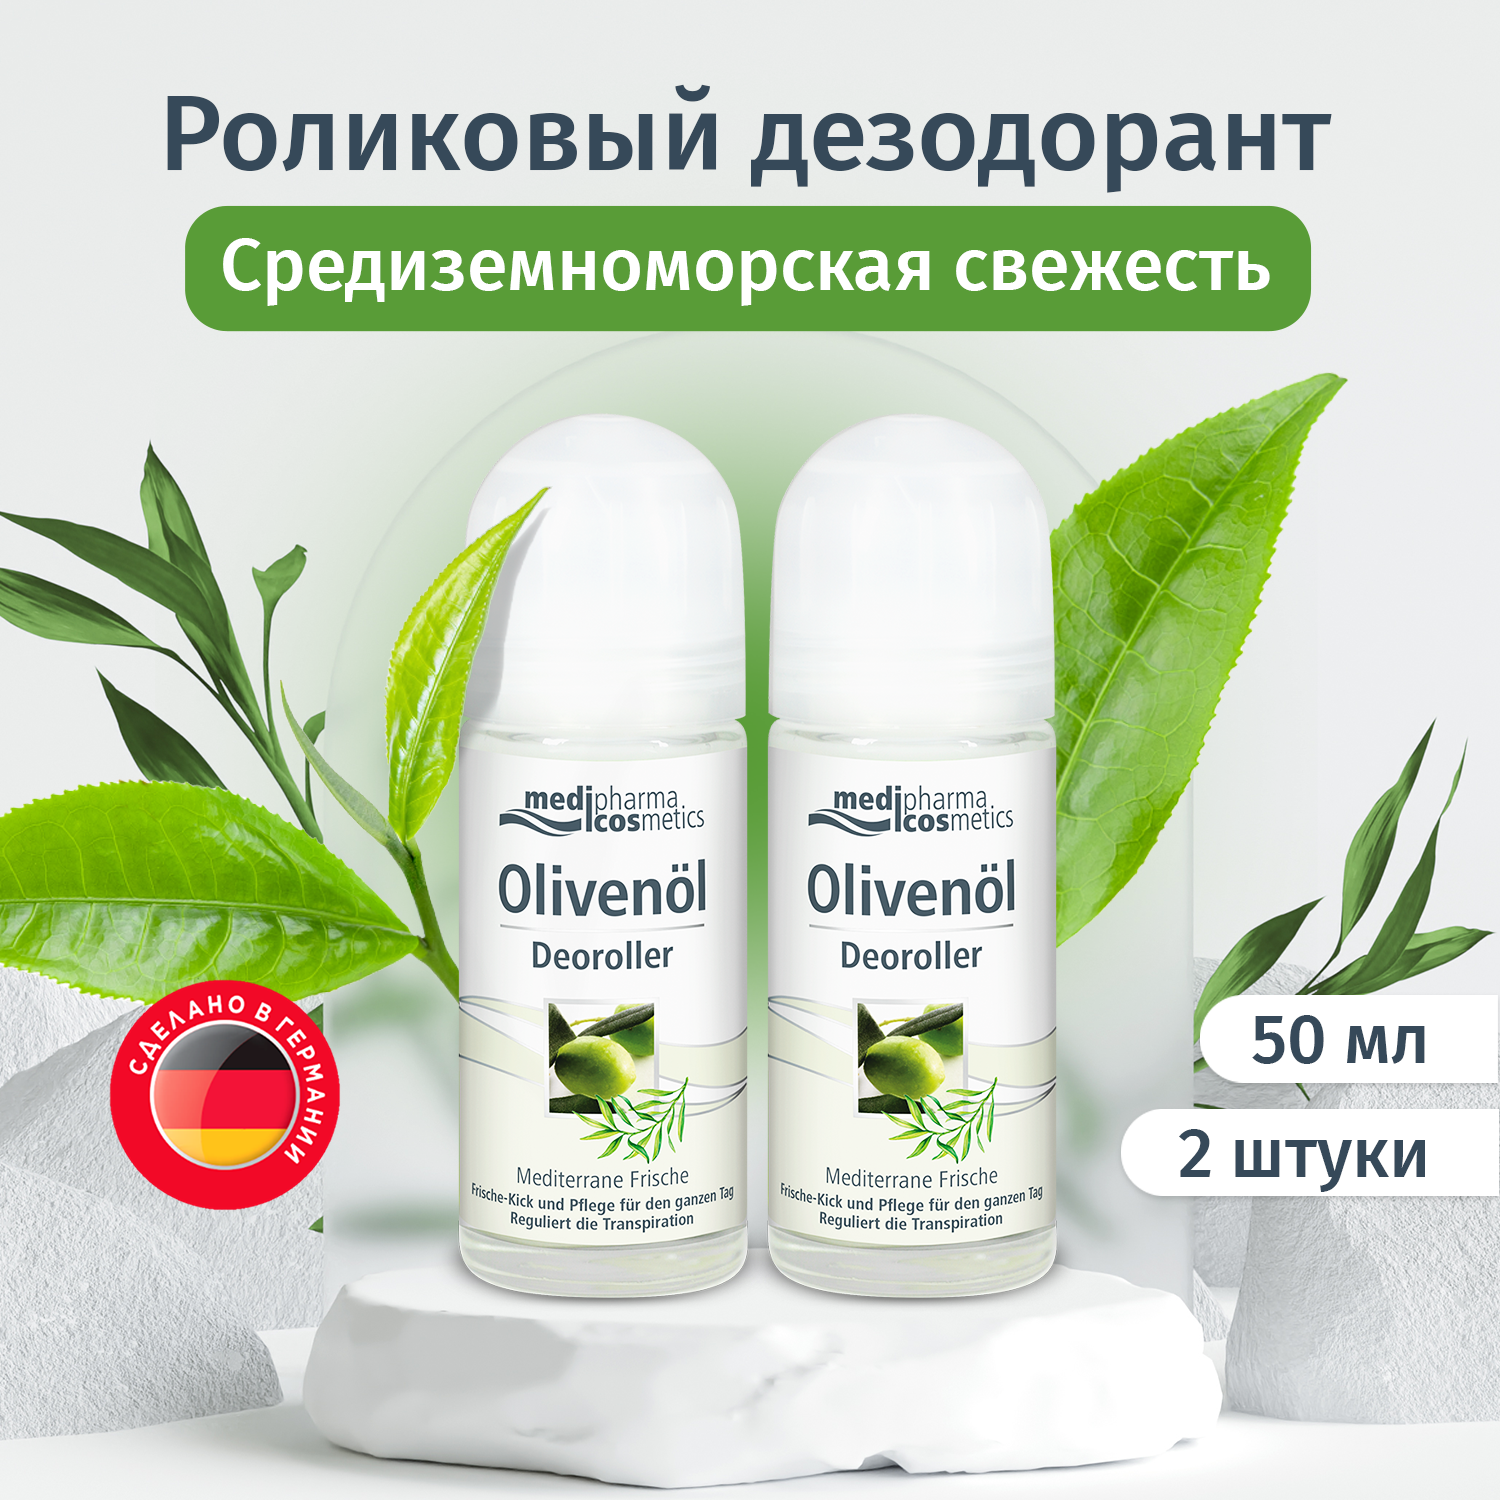 Medipharma cosmetics Olivenol дезодорант роликовый "Средиземноморская свежесть", набор 50мл х 2шт